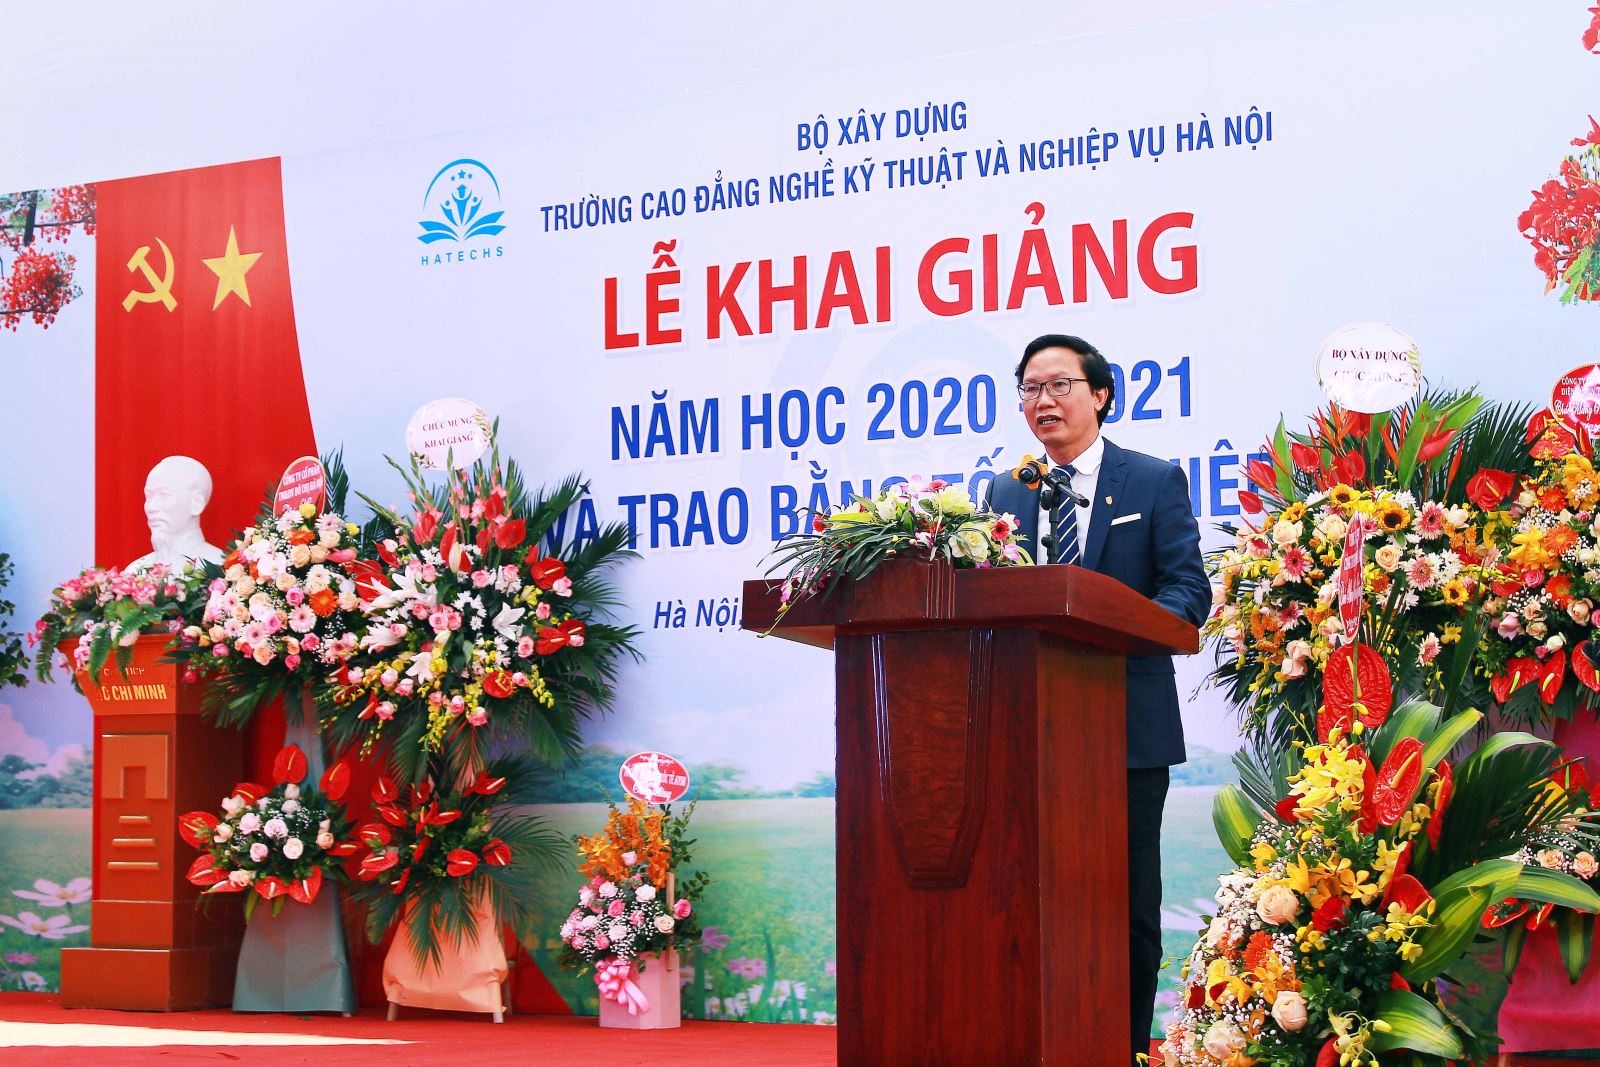 Thứ trưởng Nguyễn Đình Toàn phát biểu tại lễ Khai giảng năm học mới của trường Cao đẳng nghề Kỹ thuật và Nghiệp vụ Hà Nội